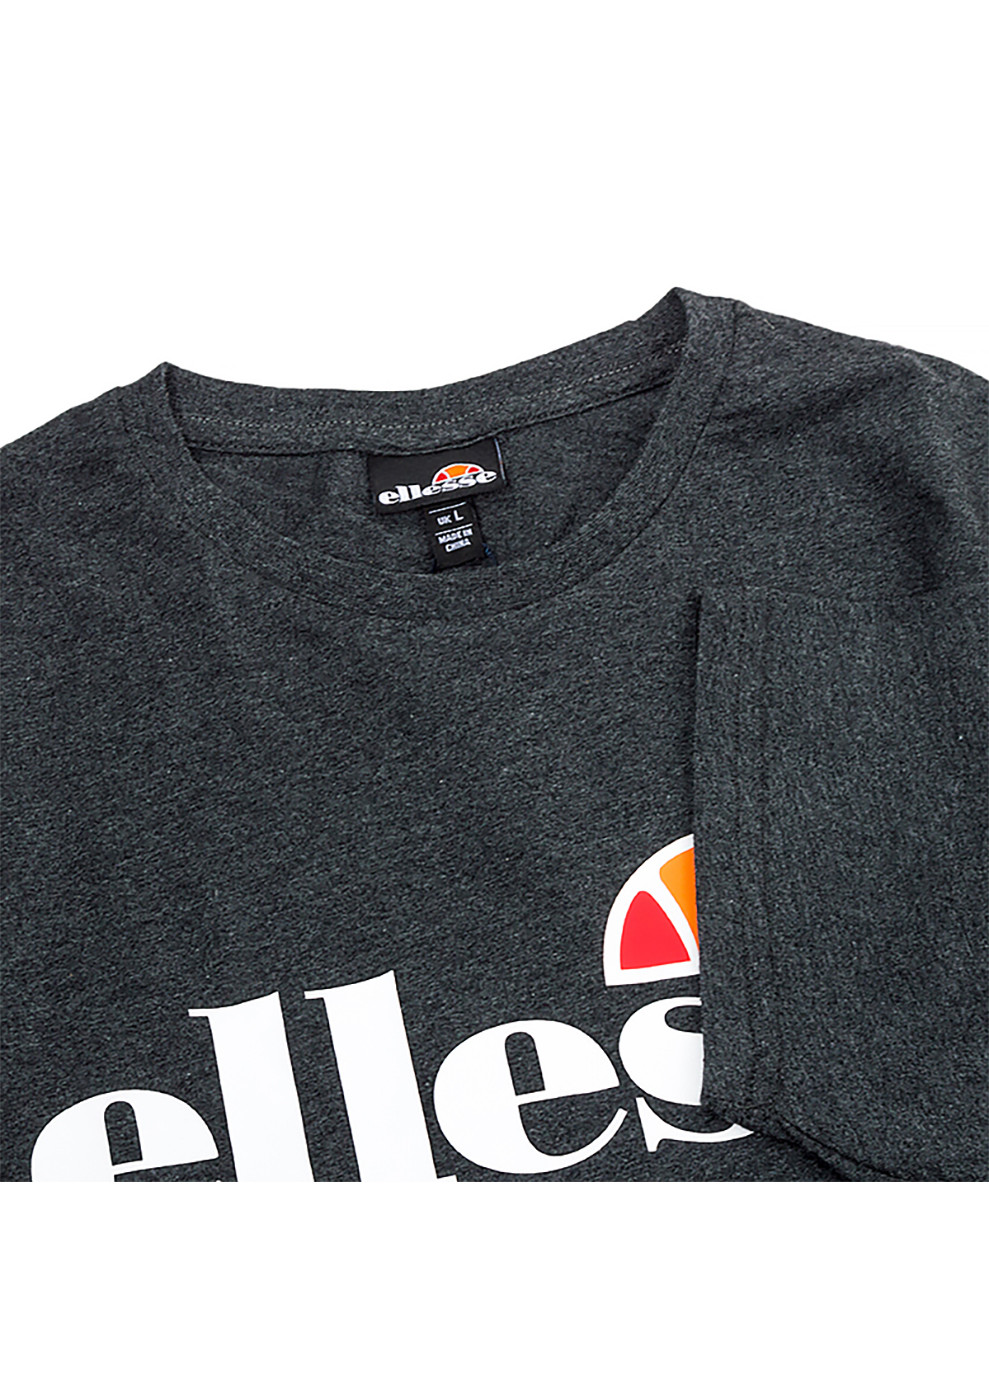 Серая мужская футболка sl prado серый s (shc07405-dark-grey-marl s) Ellesse